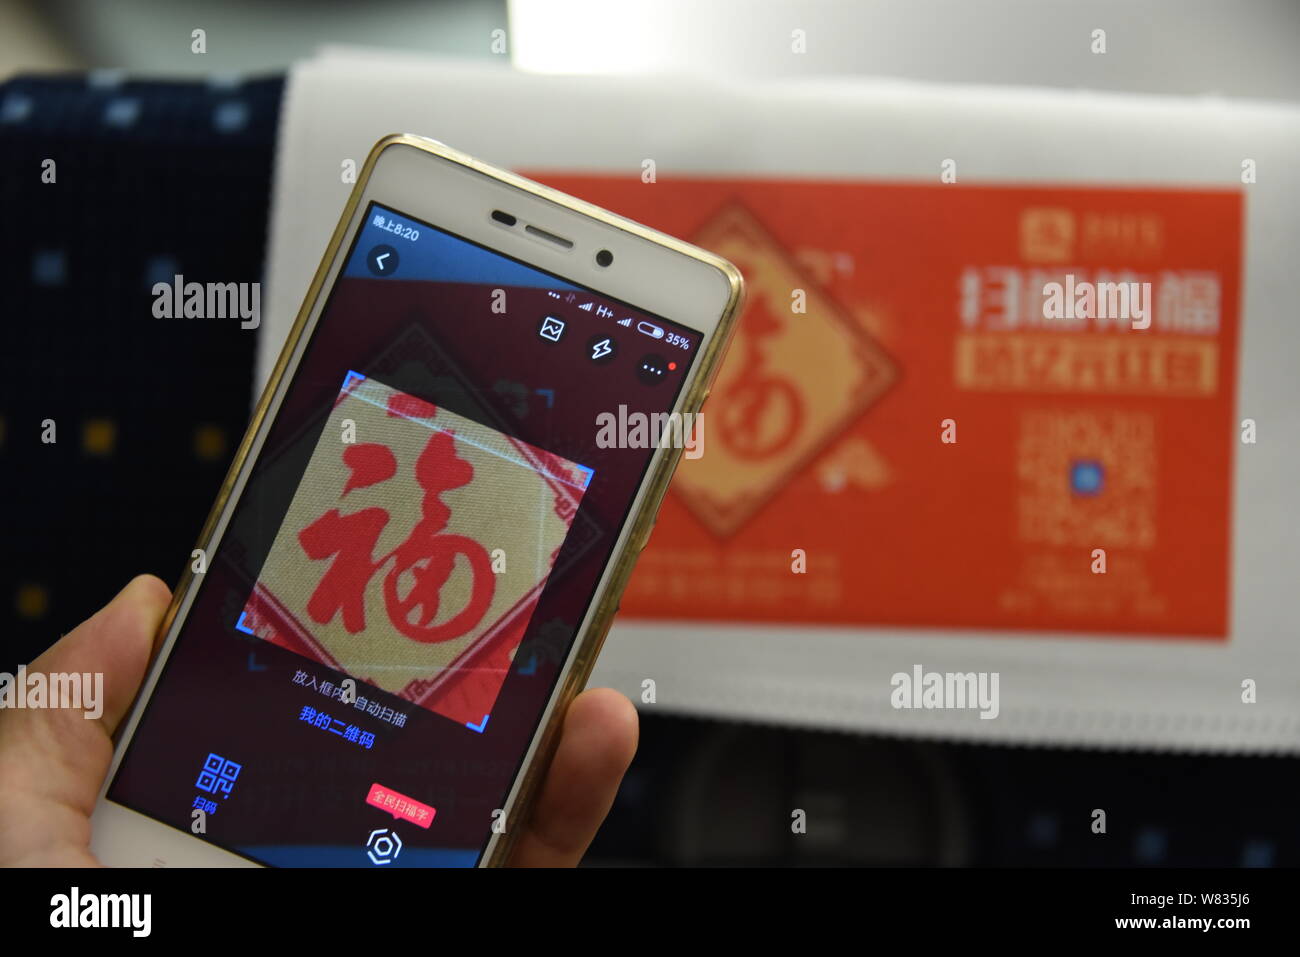 Un pasajero chino utiliza su smartphone para escanear el carácter chino "Fu", que significa "Suerte" en inglés, para reproducir un Pokemon Go-inspiró la realidad aumentada Foto de stock